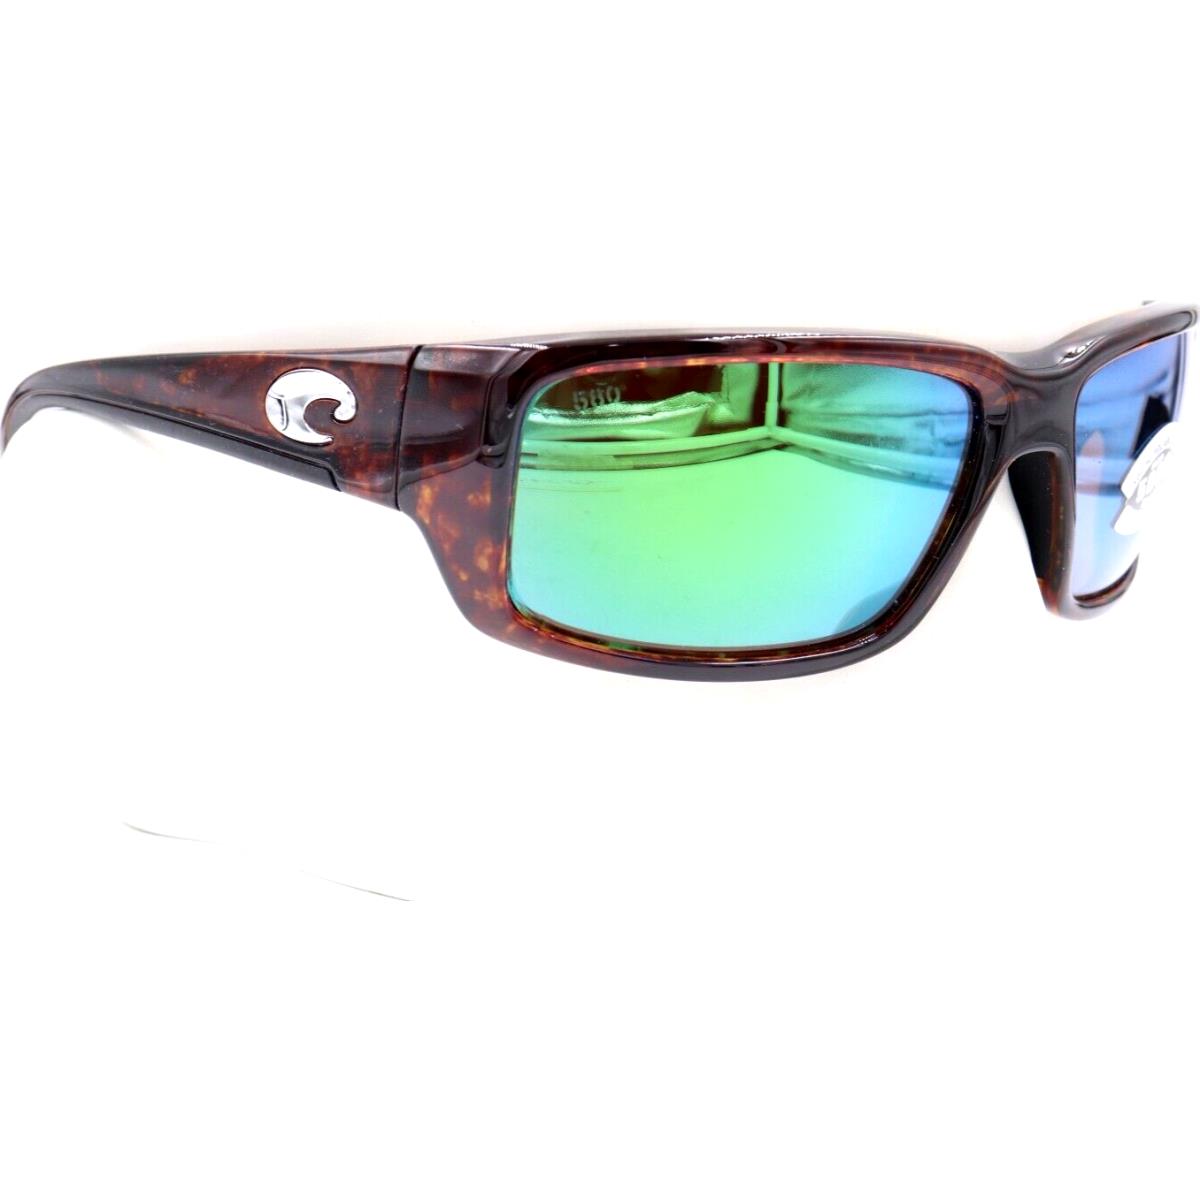 Costa Del Mar sunglasses Fantail - 10 tortoise Frame, Green Lens